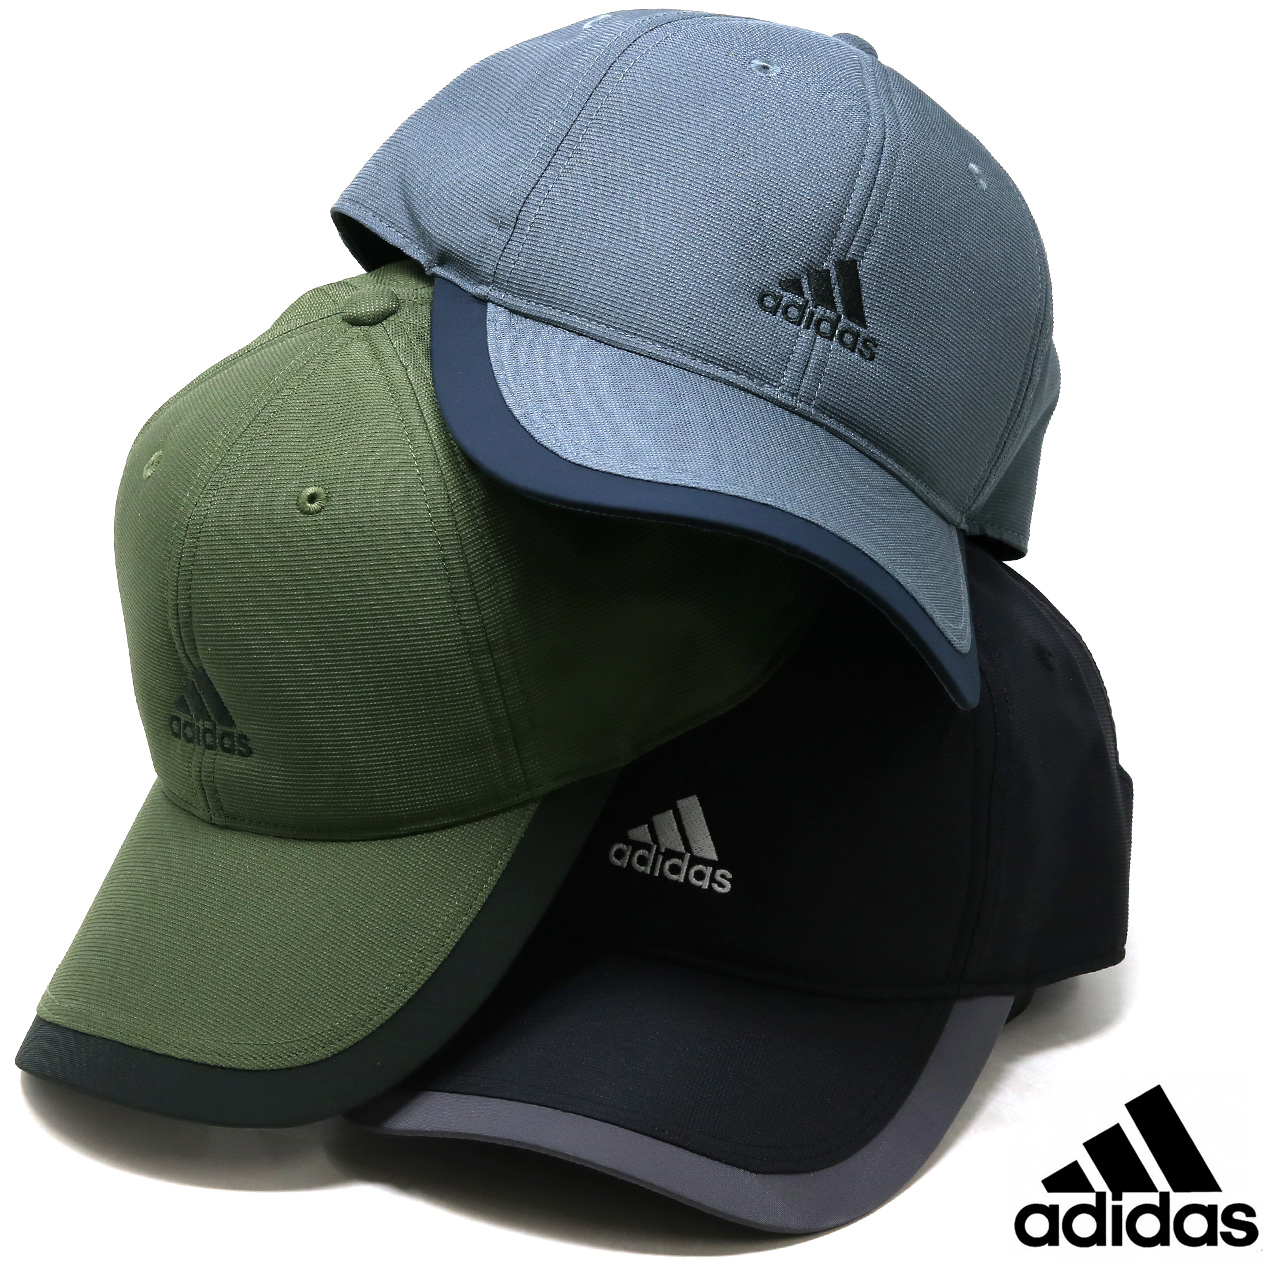 アディダス キャップ メンズ adidas CAP 帽子 フリーサイズ キャップ